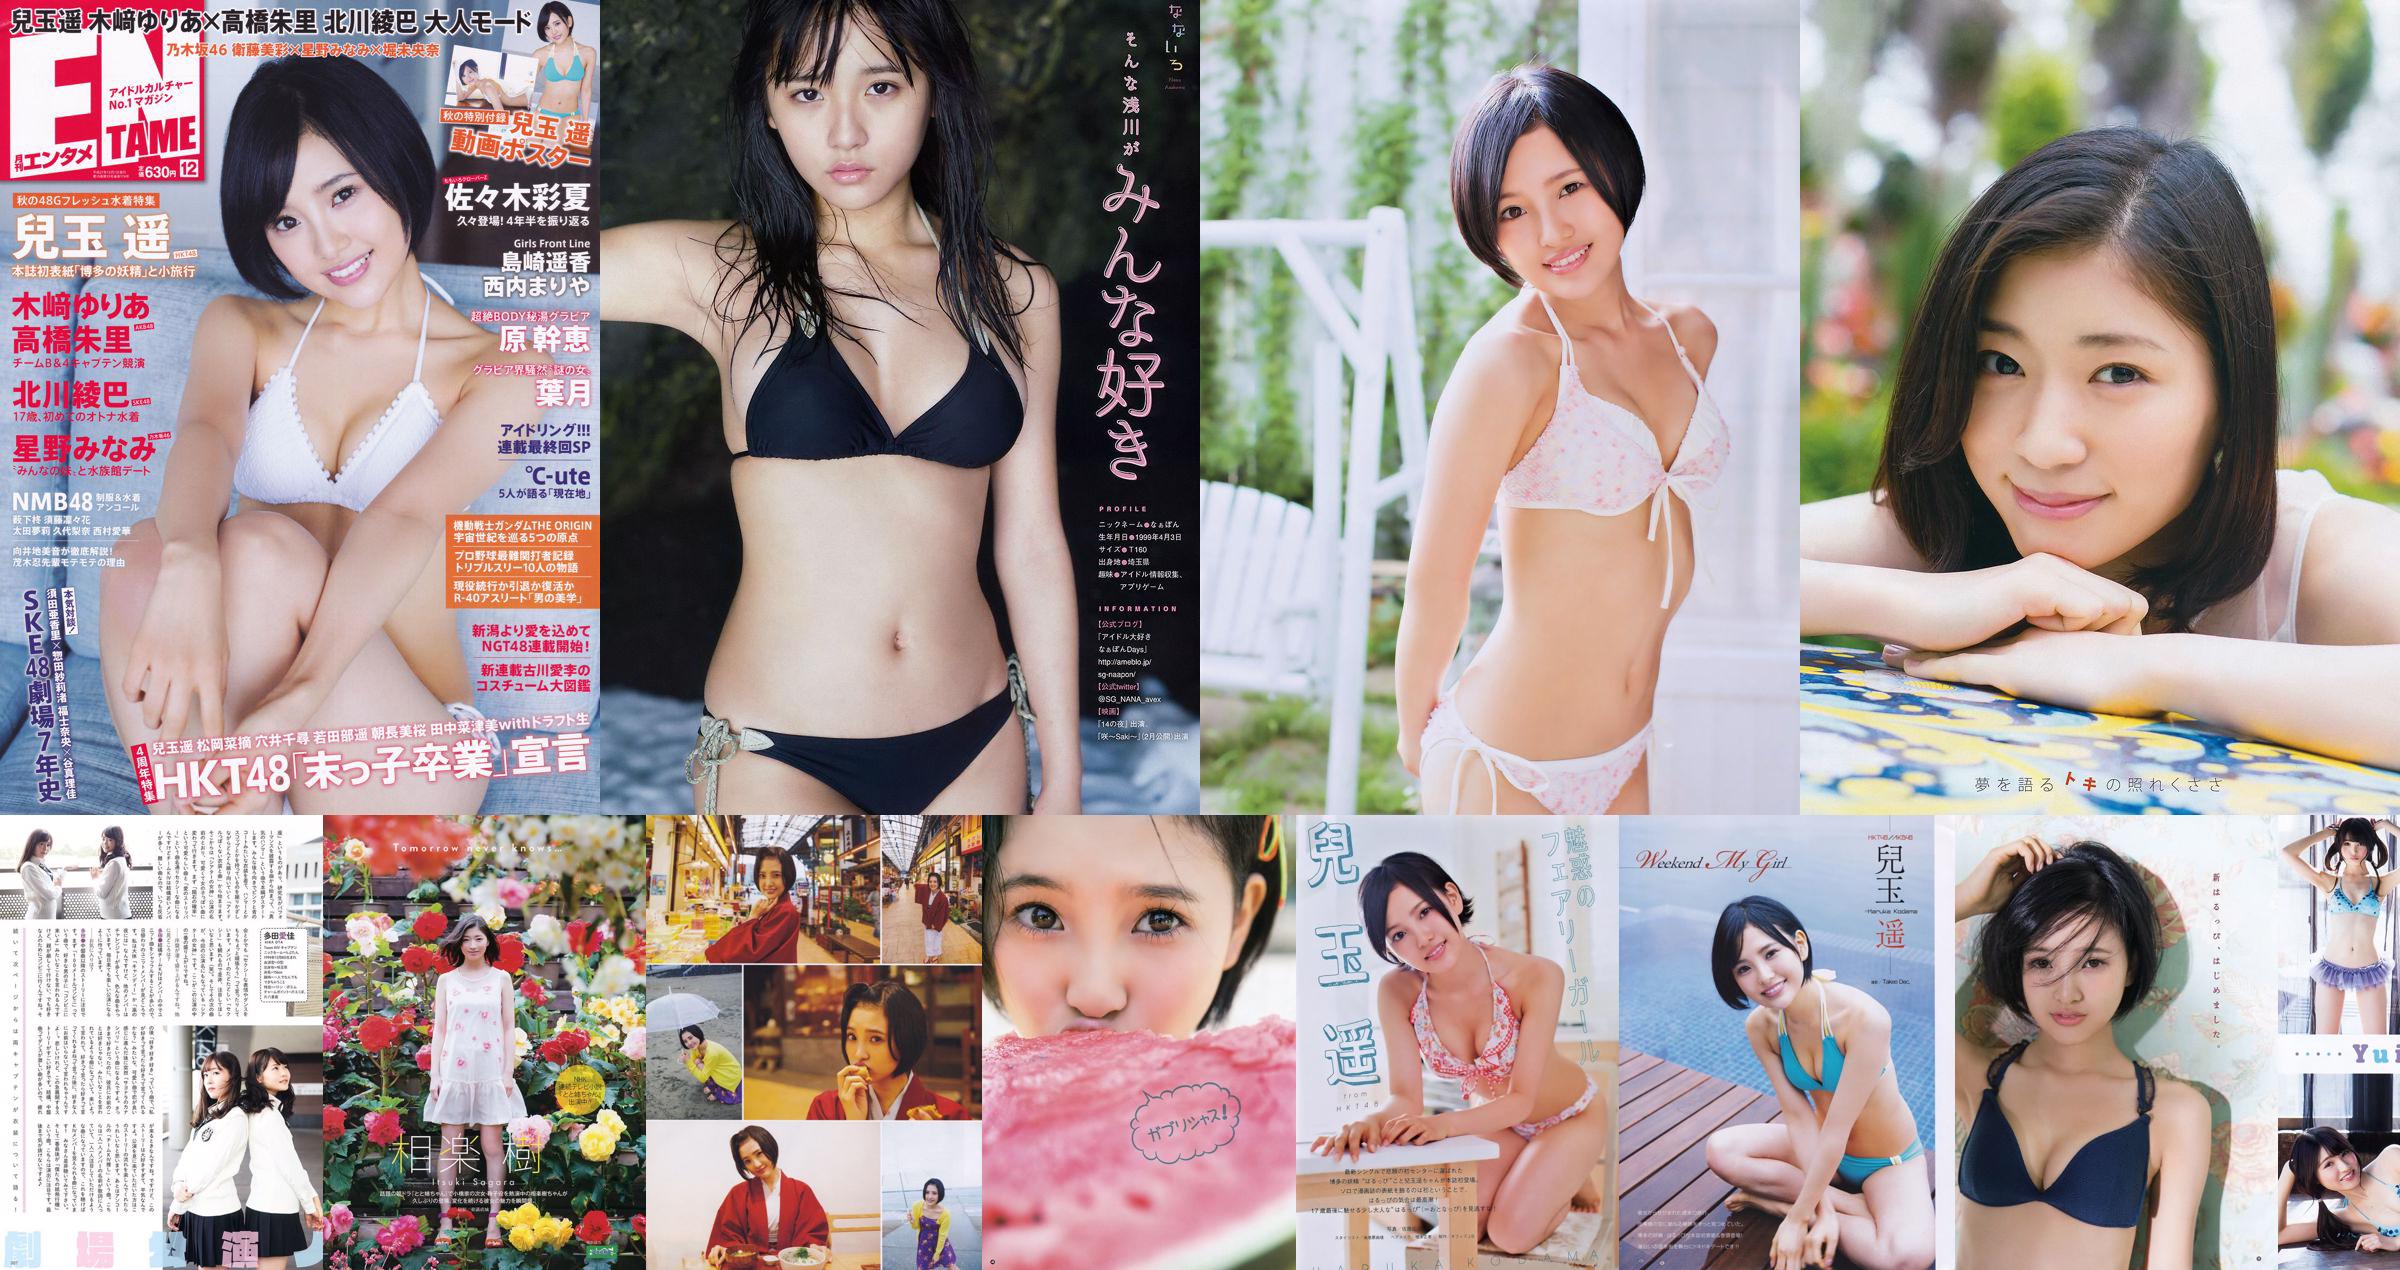 [Młody magazyn] Haruka Kodama Rina Asakawa 2017 nr 08 Zdjęcie No.5269dc Strona 1